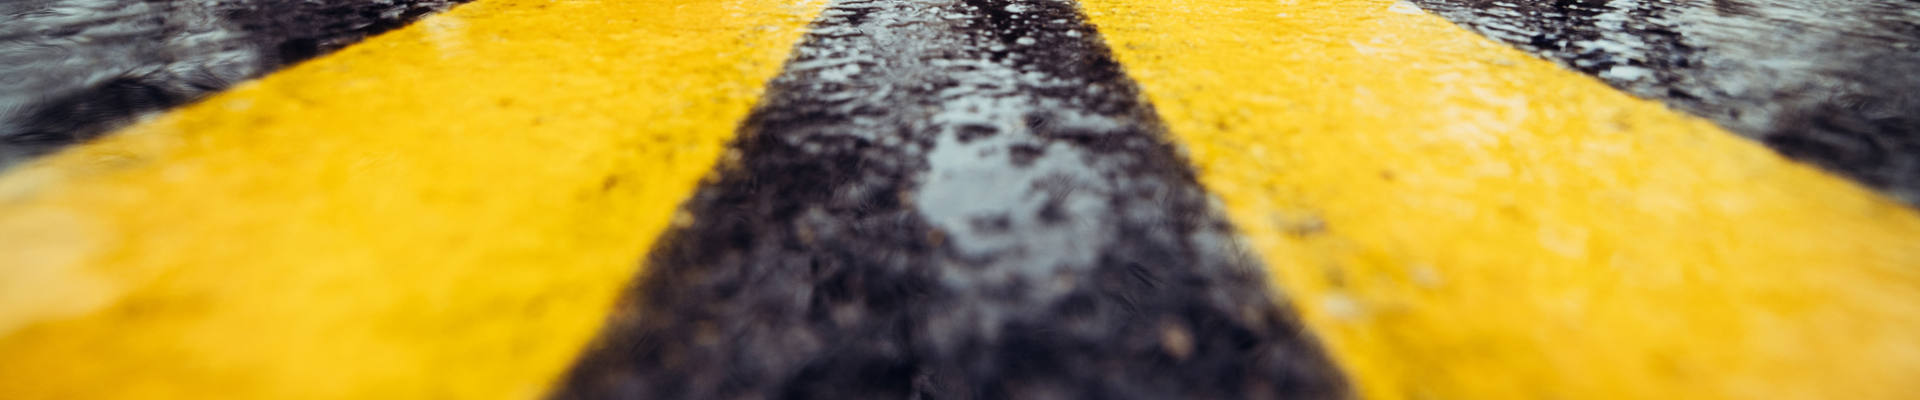 ウェットアスファルトの黄色の道路標示